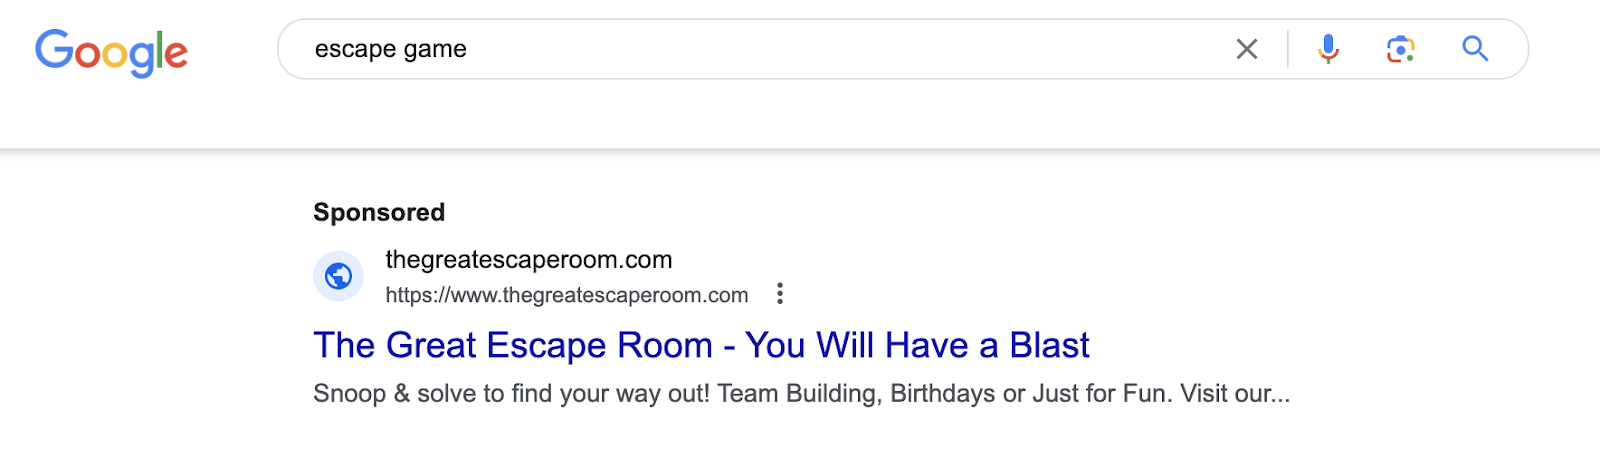 google ads escape game